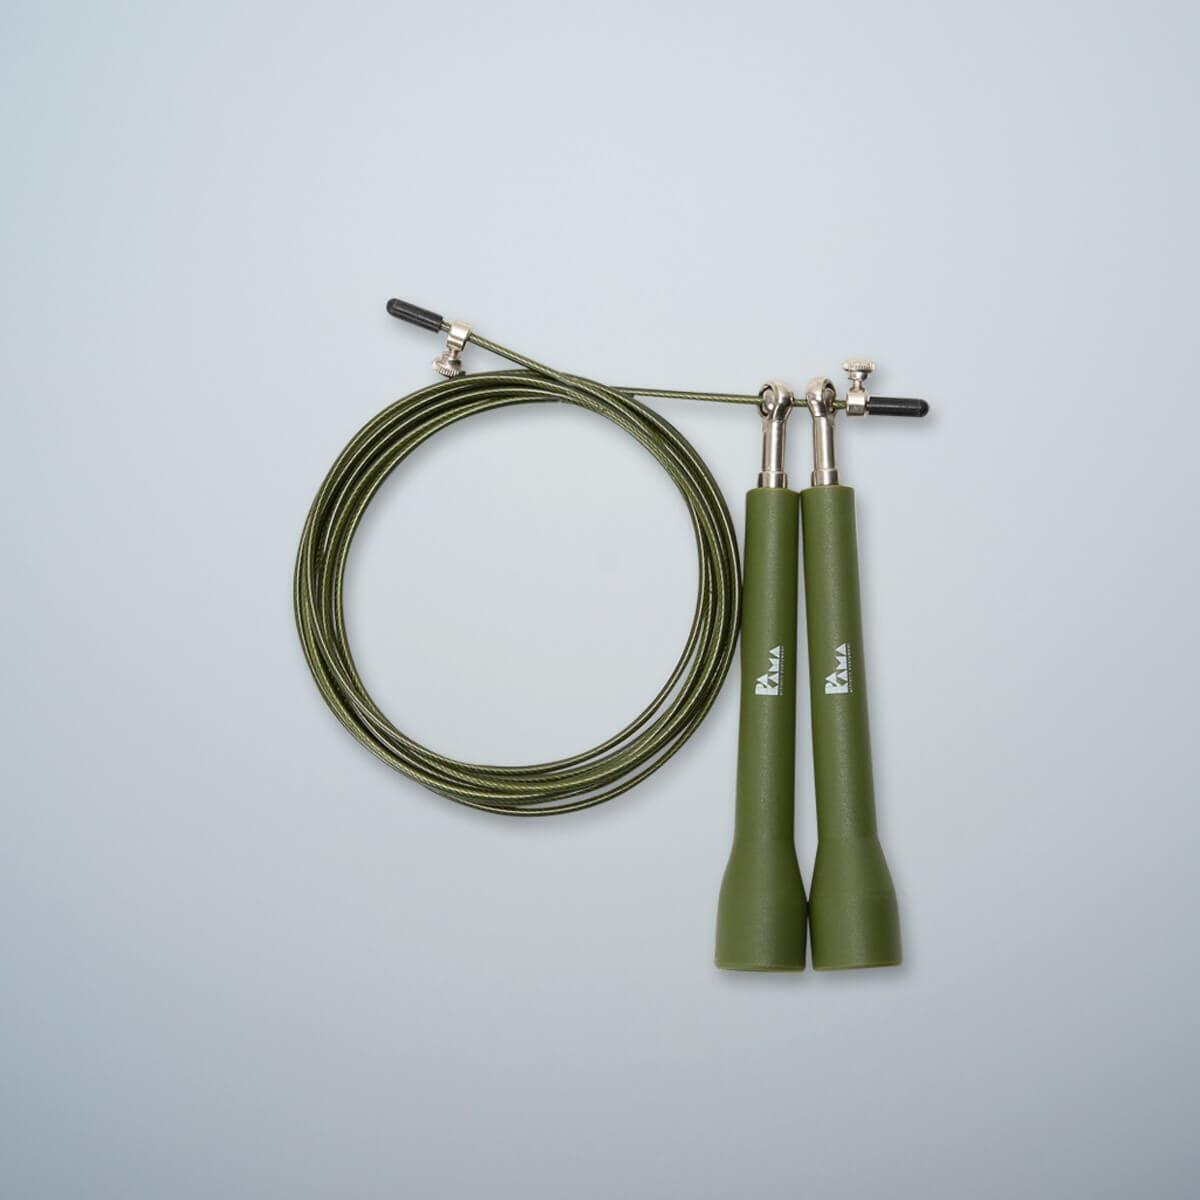 Скоростная скакалка PAKAMA, зеленый полезная скоростная скакалка простая губчатая ручка регулируемая длина скоростная скакалка скакалка скакалка